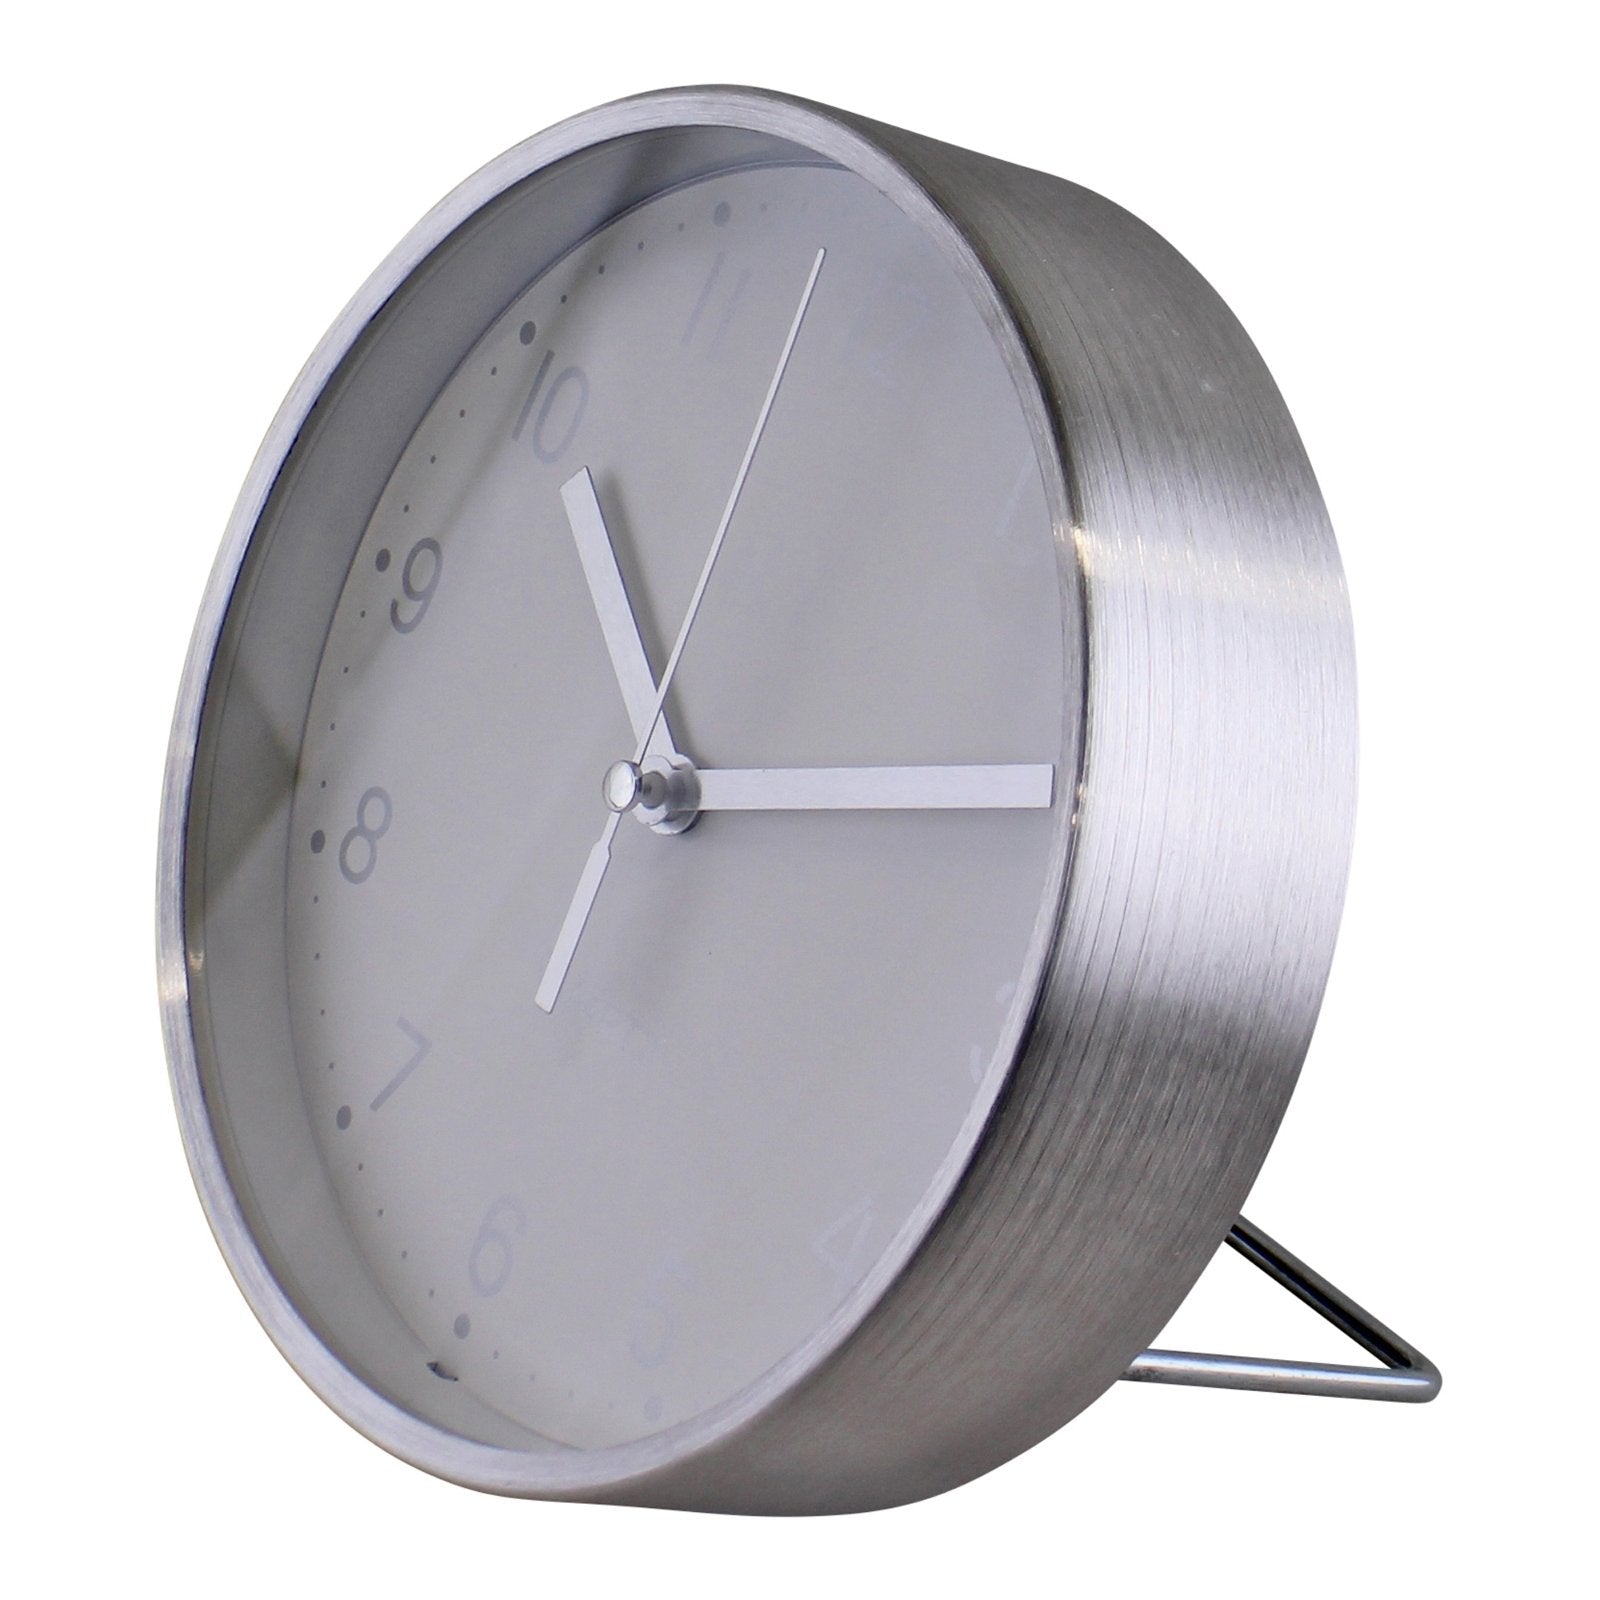 Silver Metal Table Clock, 16cm diameter